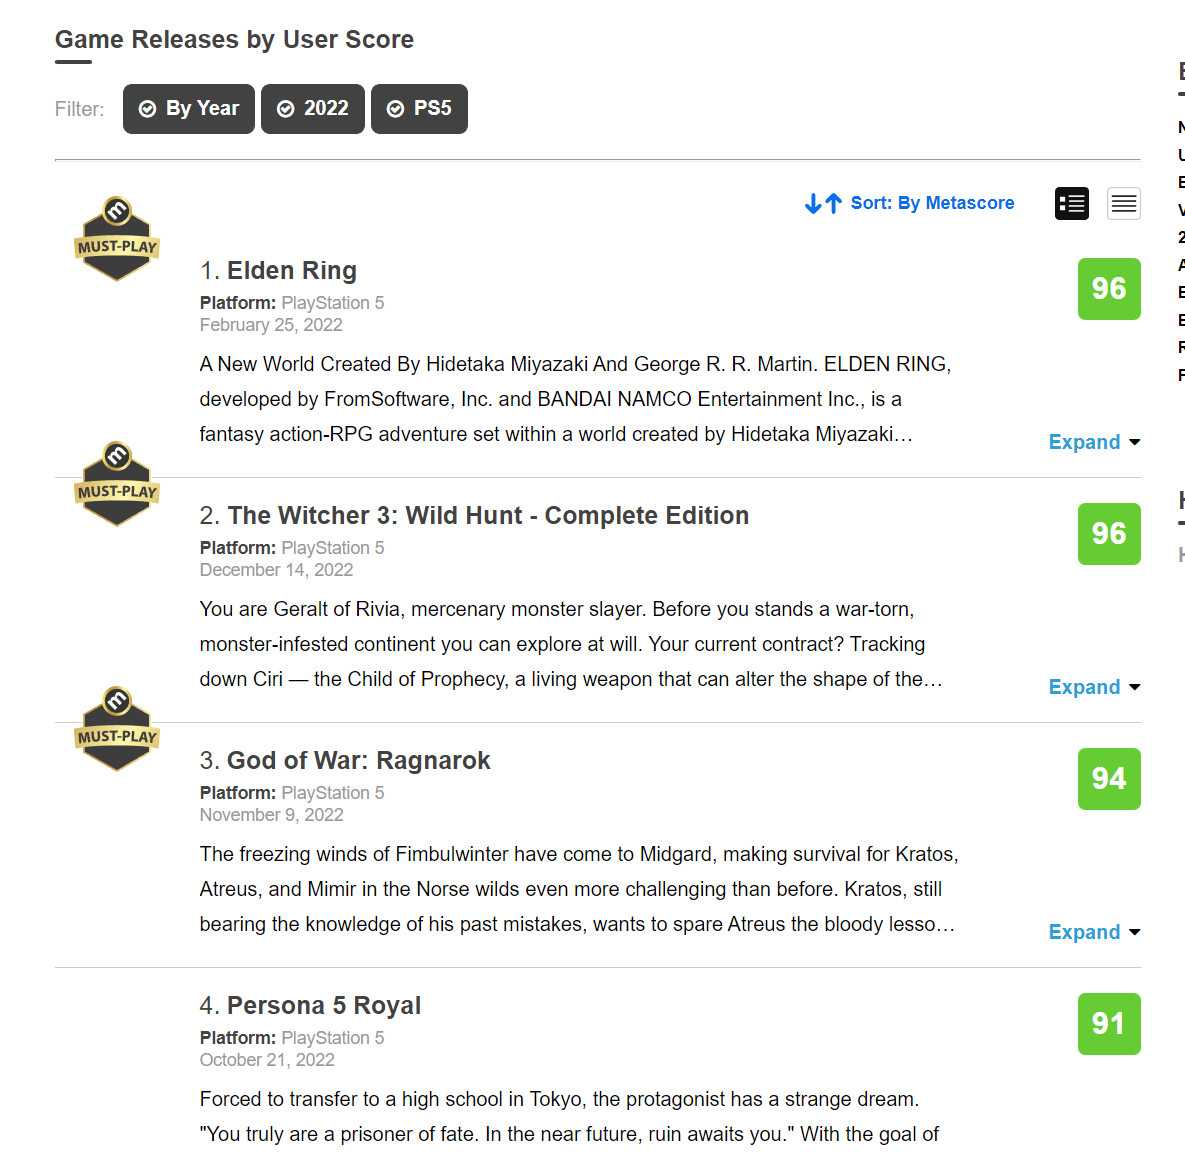 《巫师3》成M站评分第二游戏 超《战神5》(《巫师3》高清重制版)